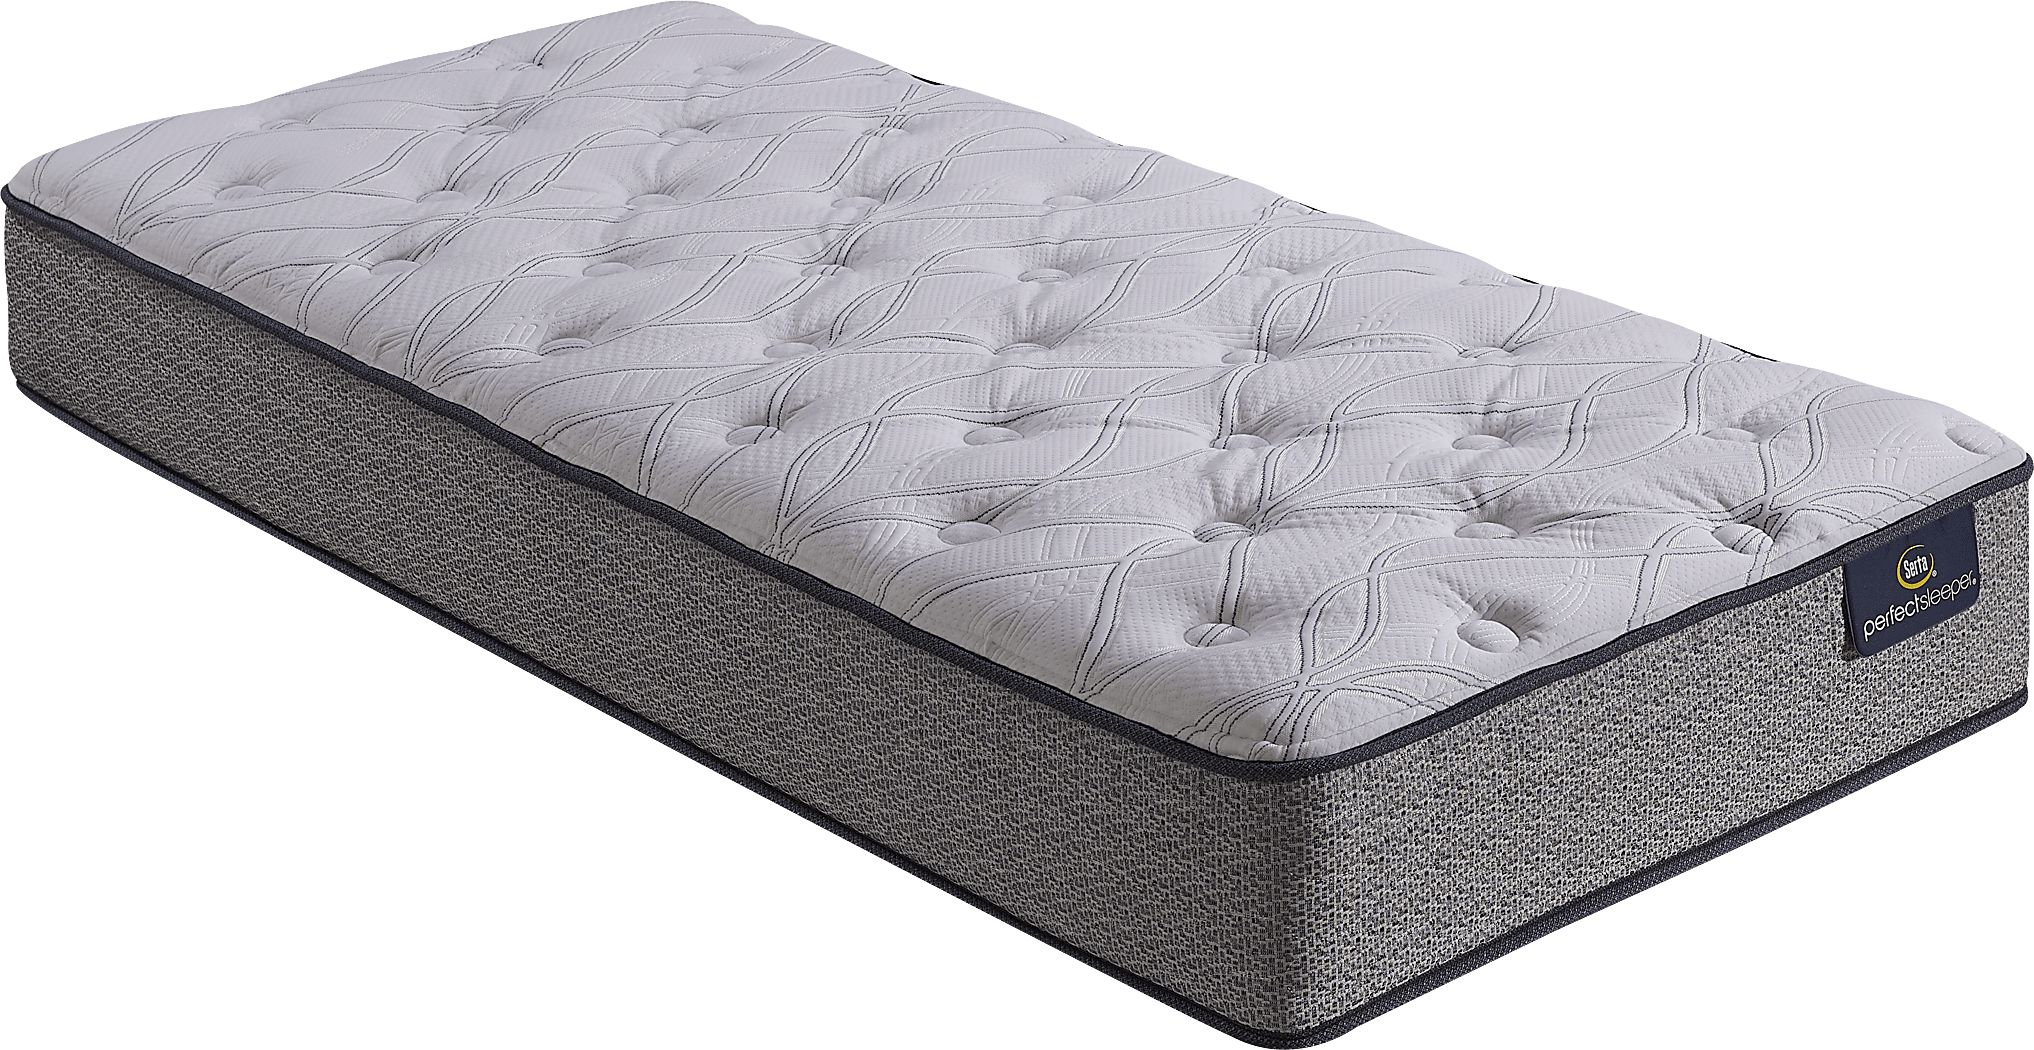 twin xl serta perfect sleeper wesbourough firm mattress